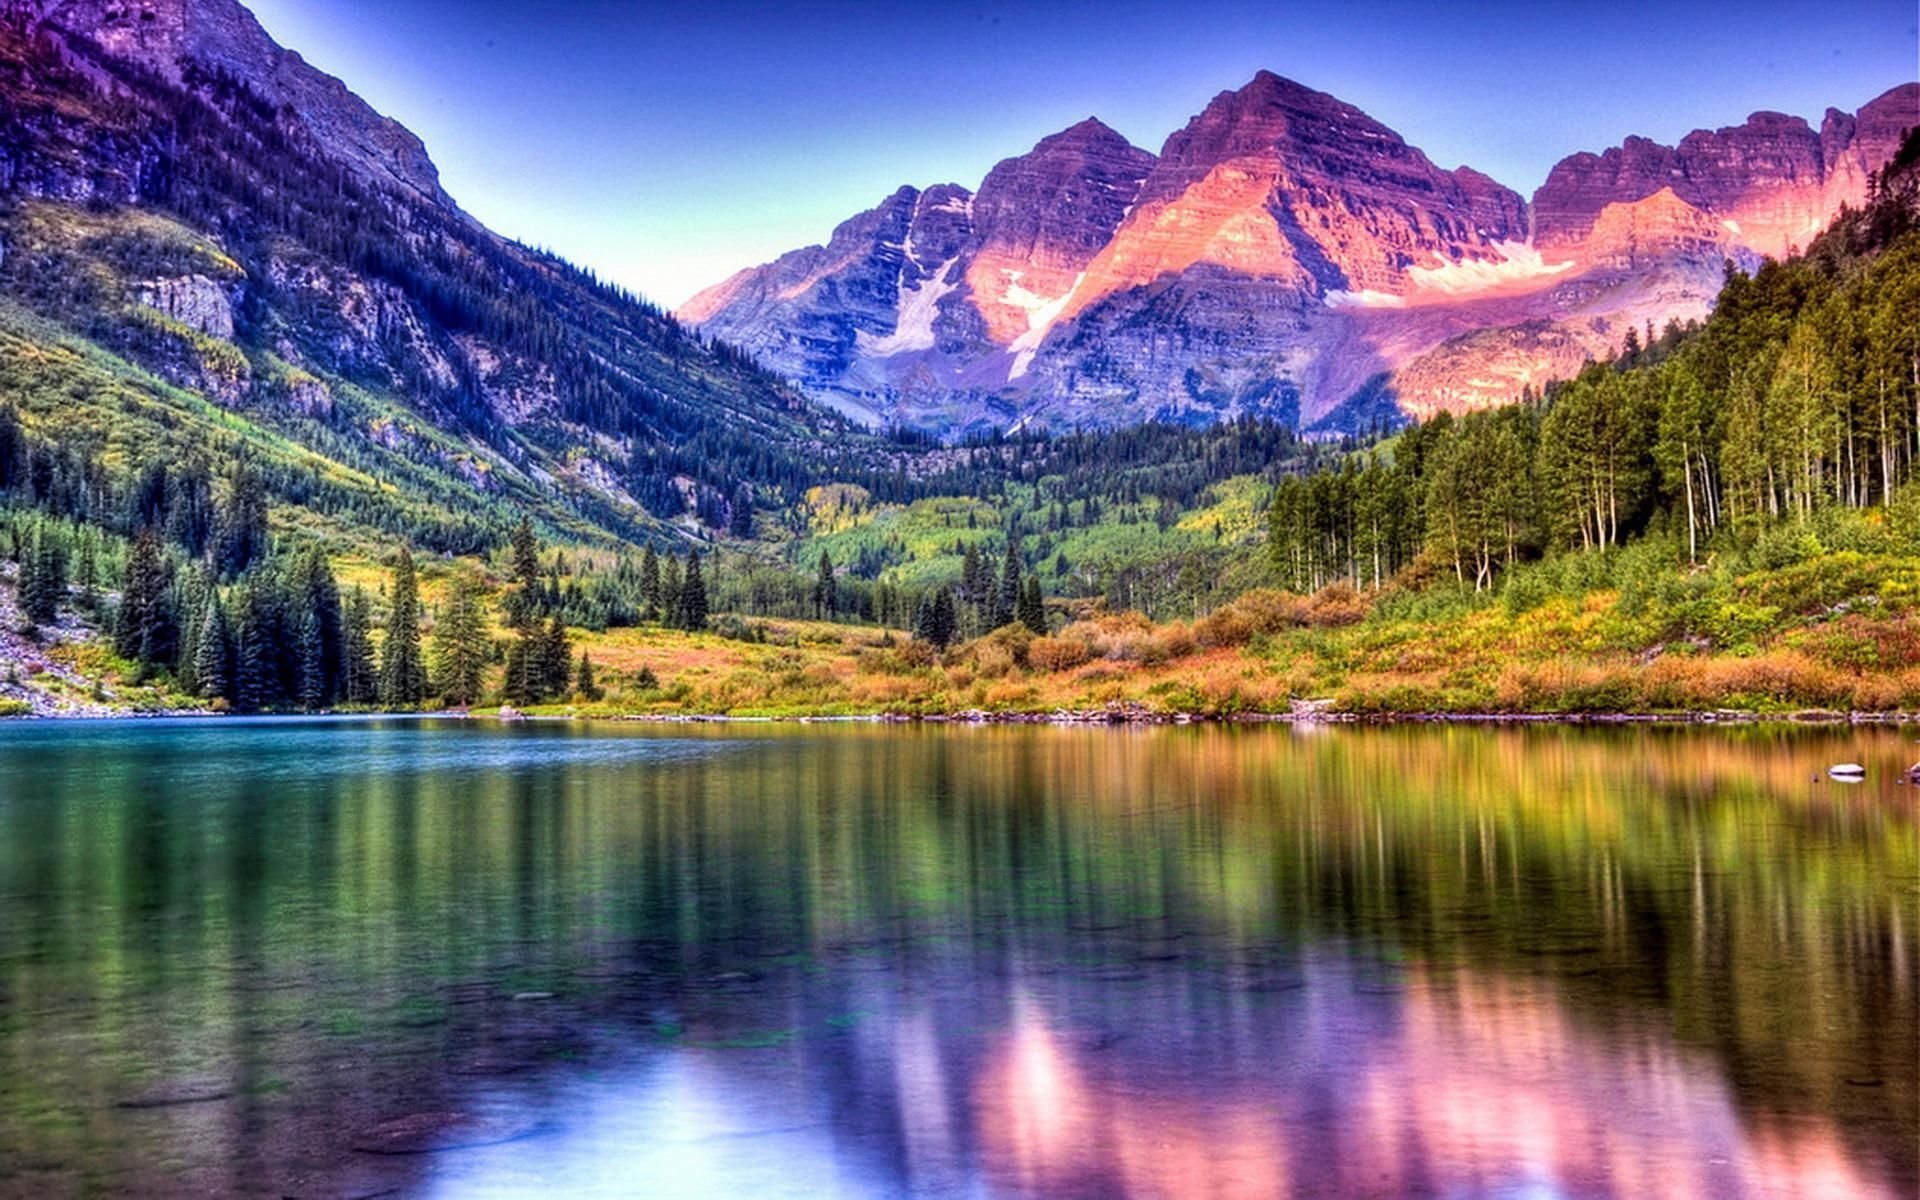 Обои на телефон самые красивые в мире. Озеро марун Колорадо. Марун Беллс Колорадо США. Maroon Bells Колорадо. Красивый пейзаж.